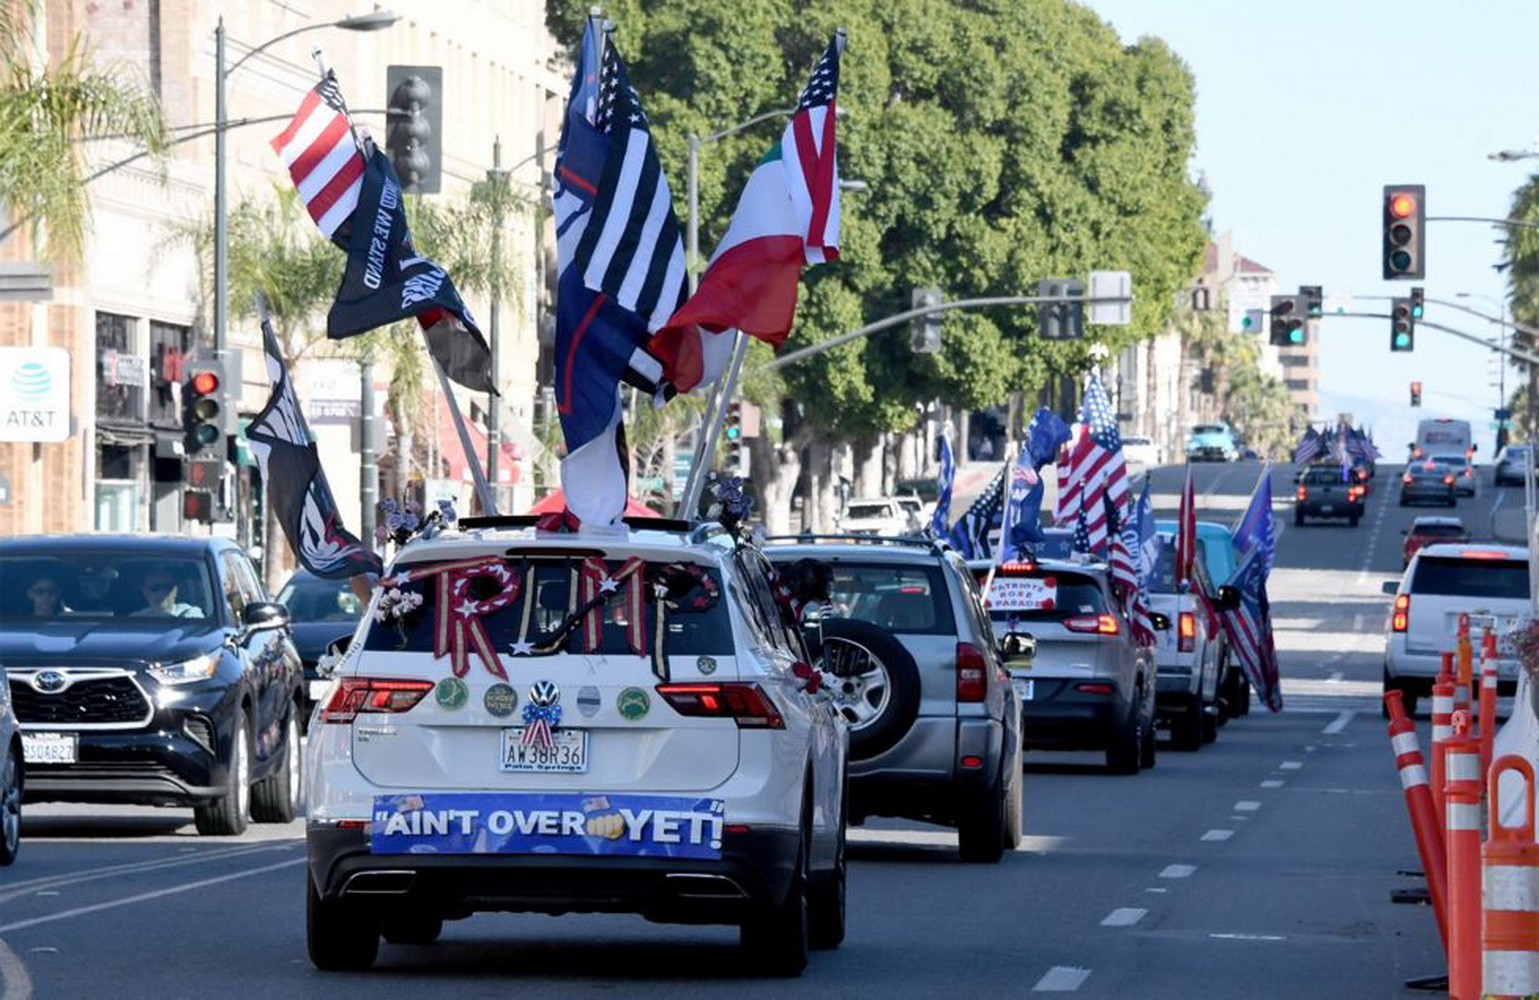 Các đoàn xe gắn cờ Trump và đôi khi có cả những chiếc xe kéo được trang trí cầu kỳ. (Nguồn: Getty Images)